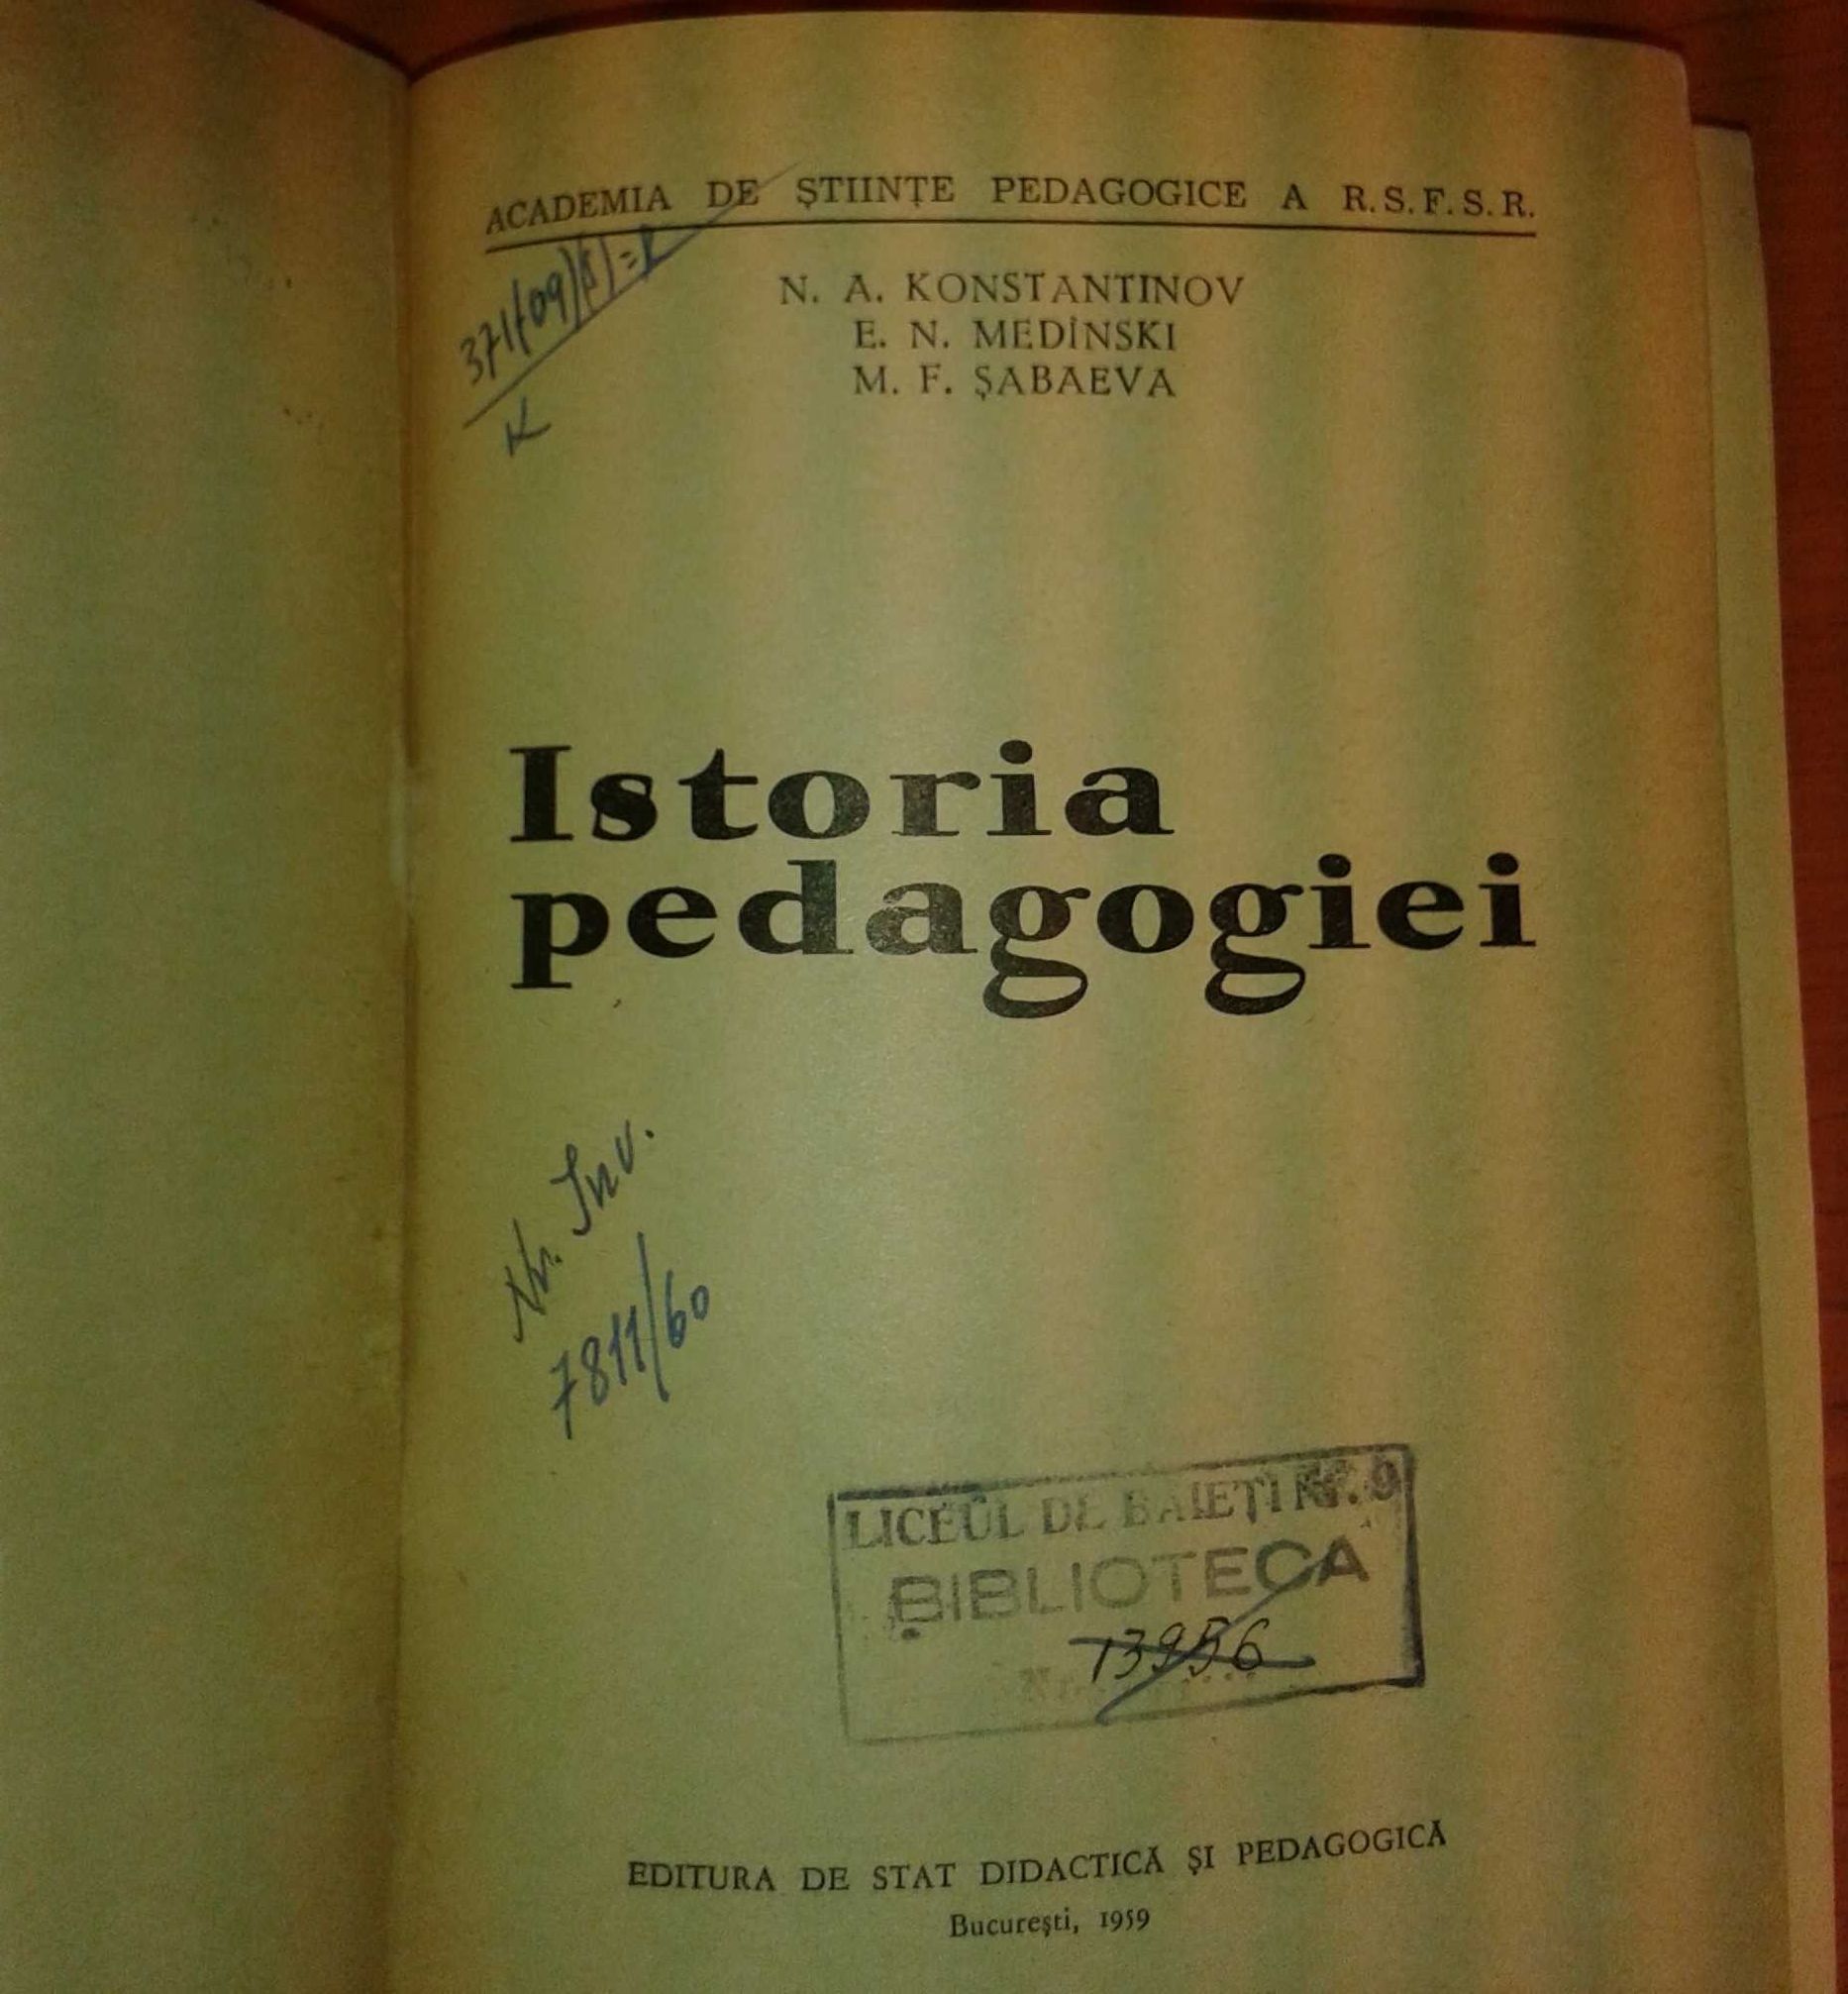 istoria pedagogiei Konstantivnov Sadaeva Medinski 1959